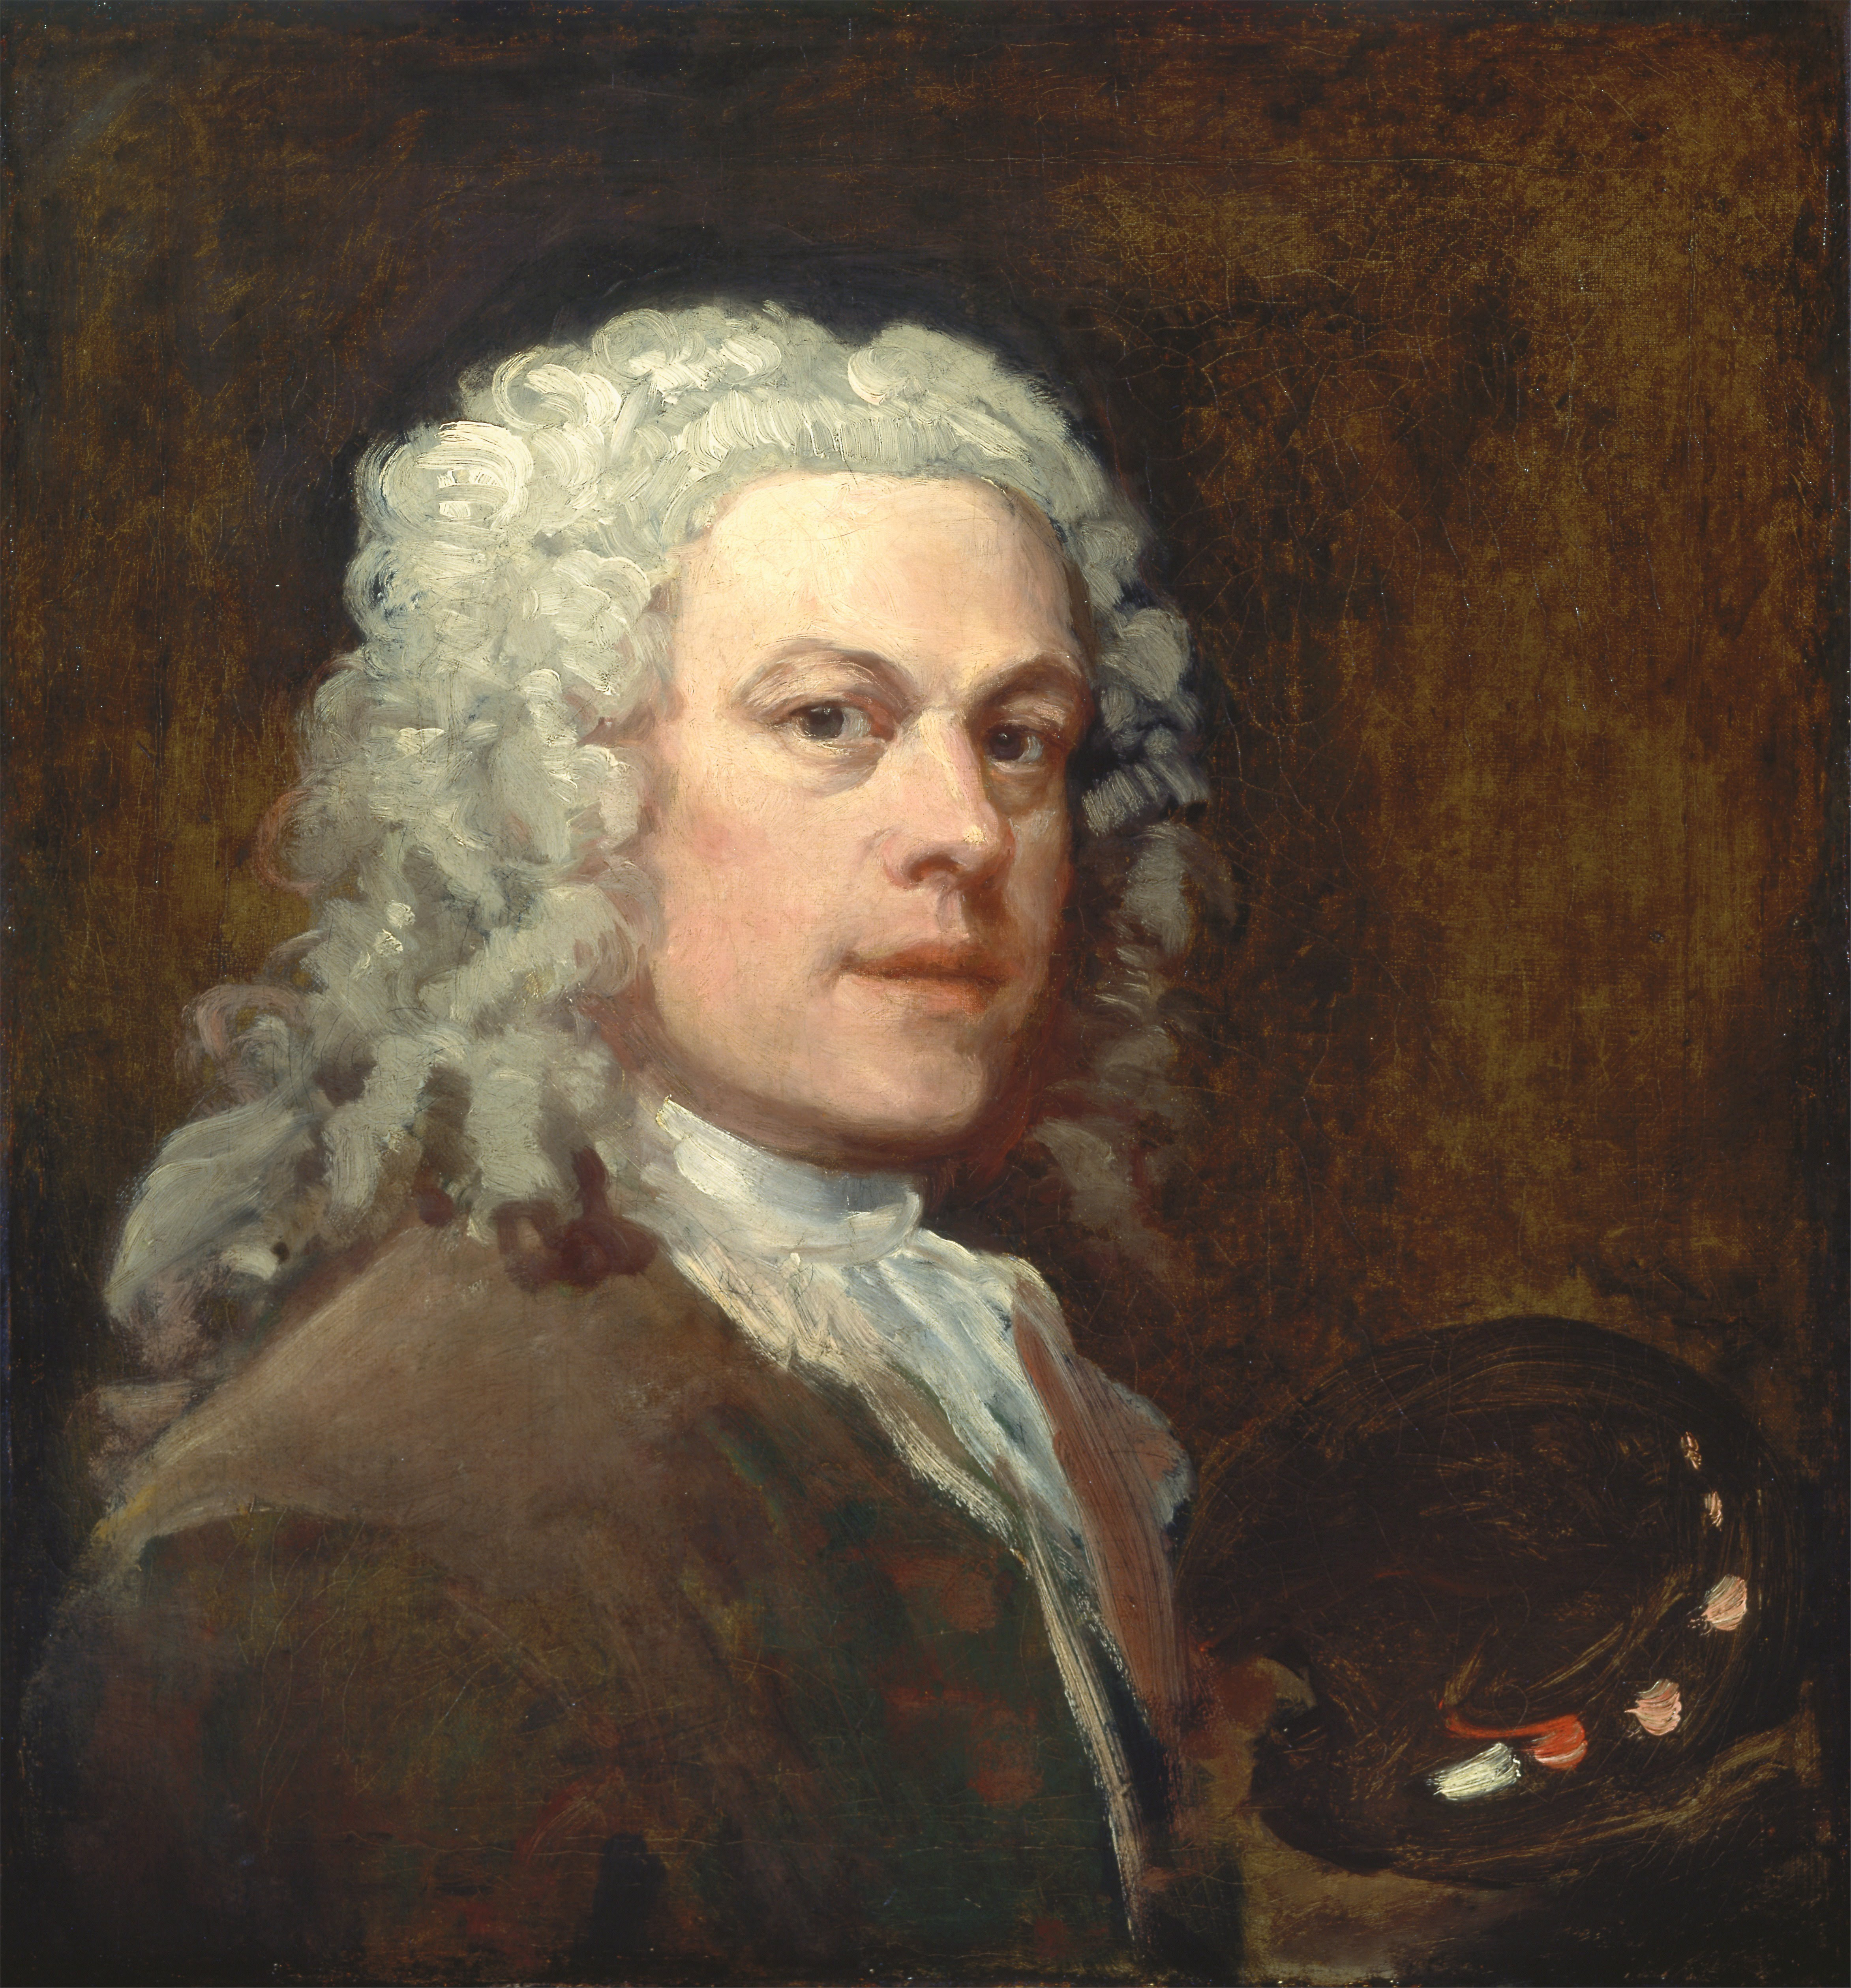 William Hogarth - November 10, 1697 - October 26,1764